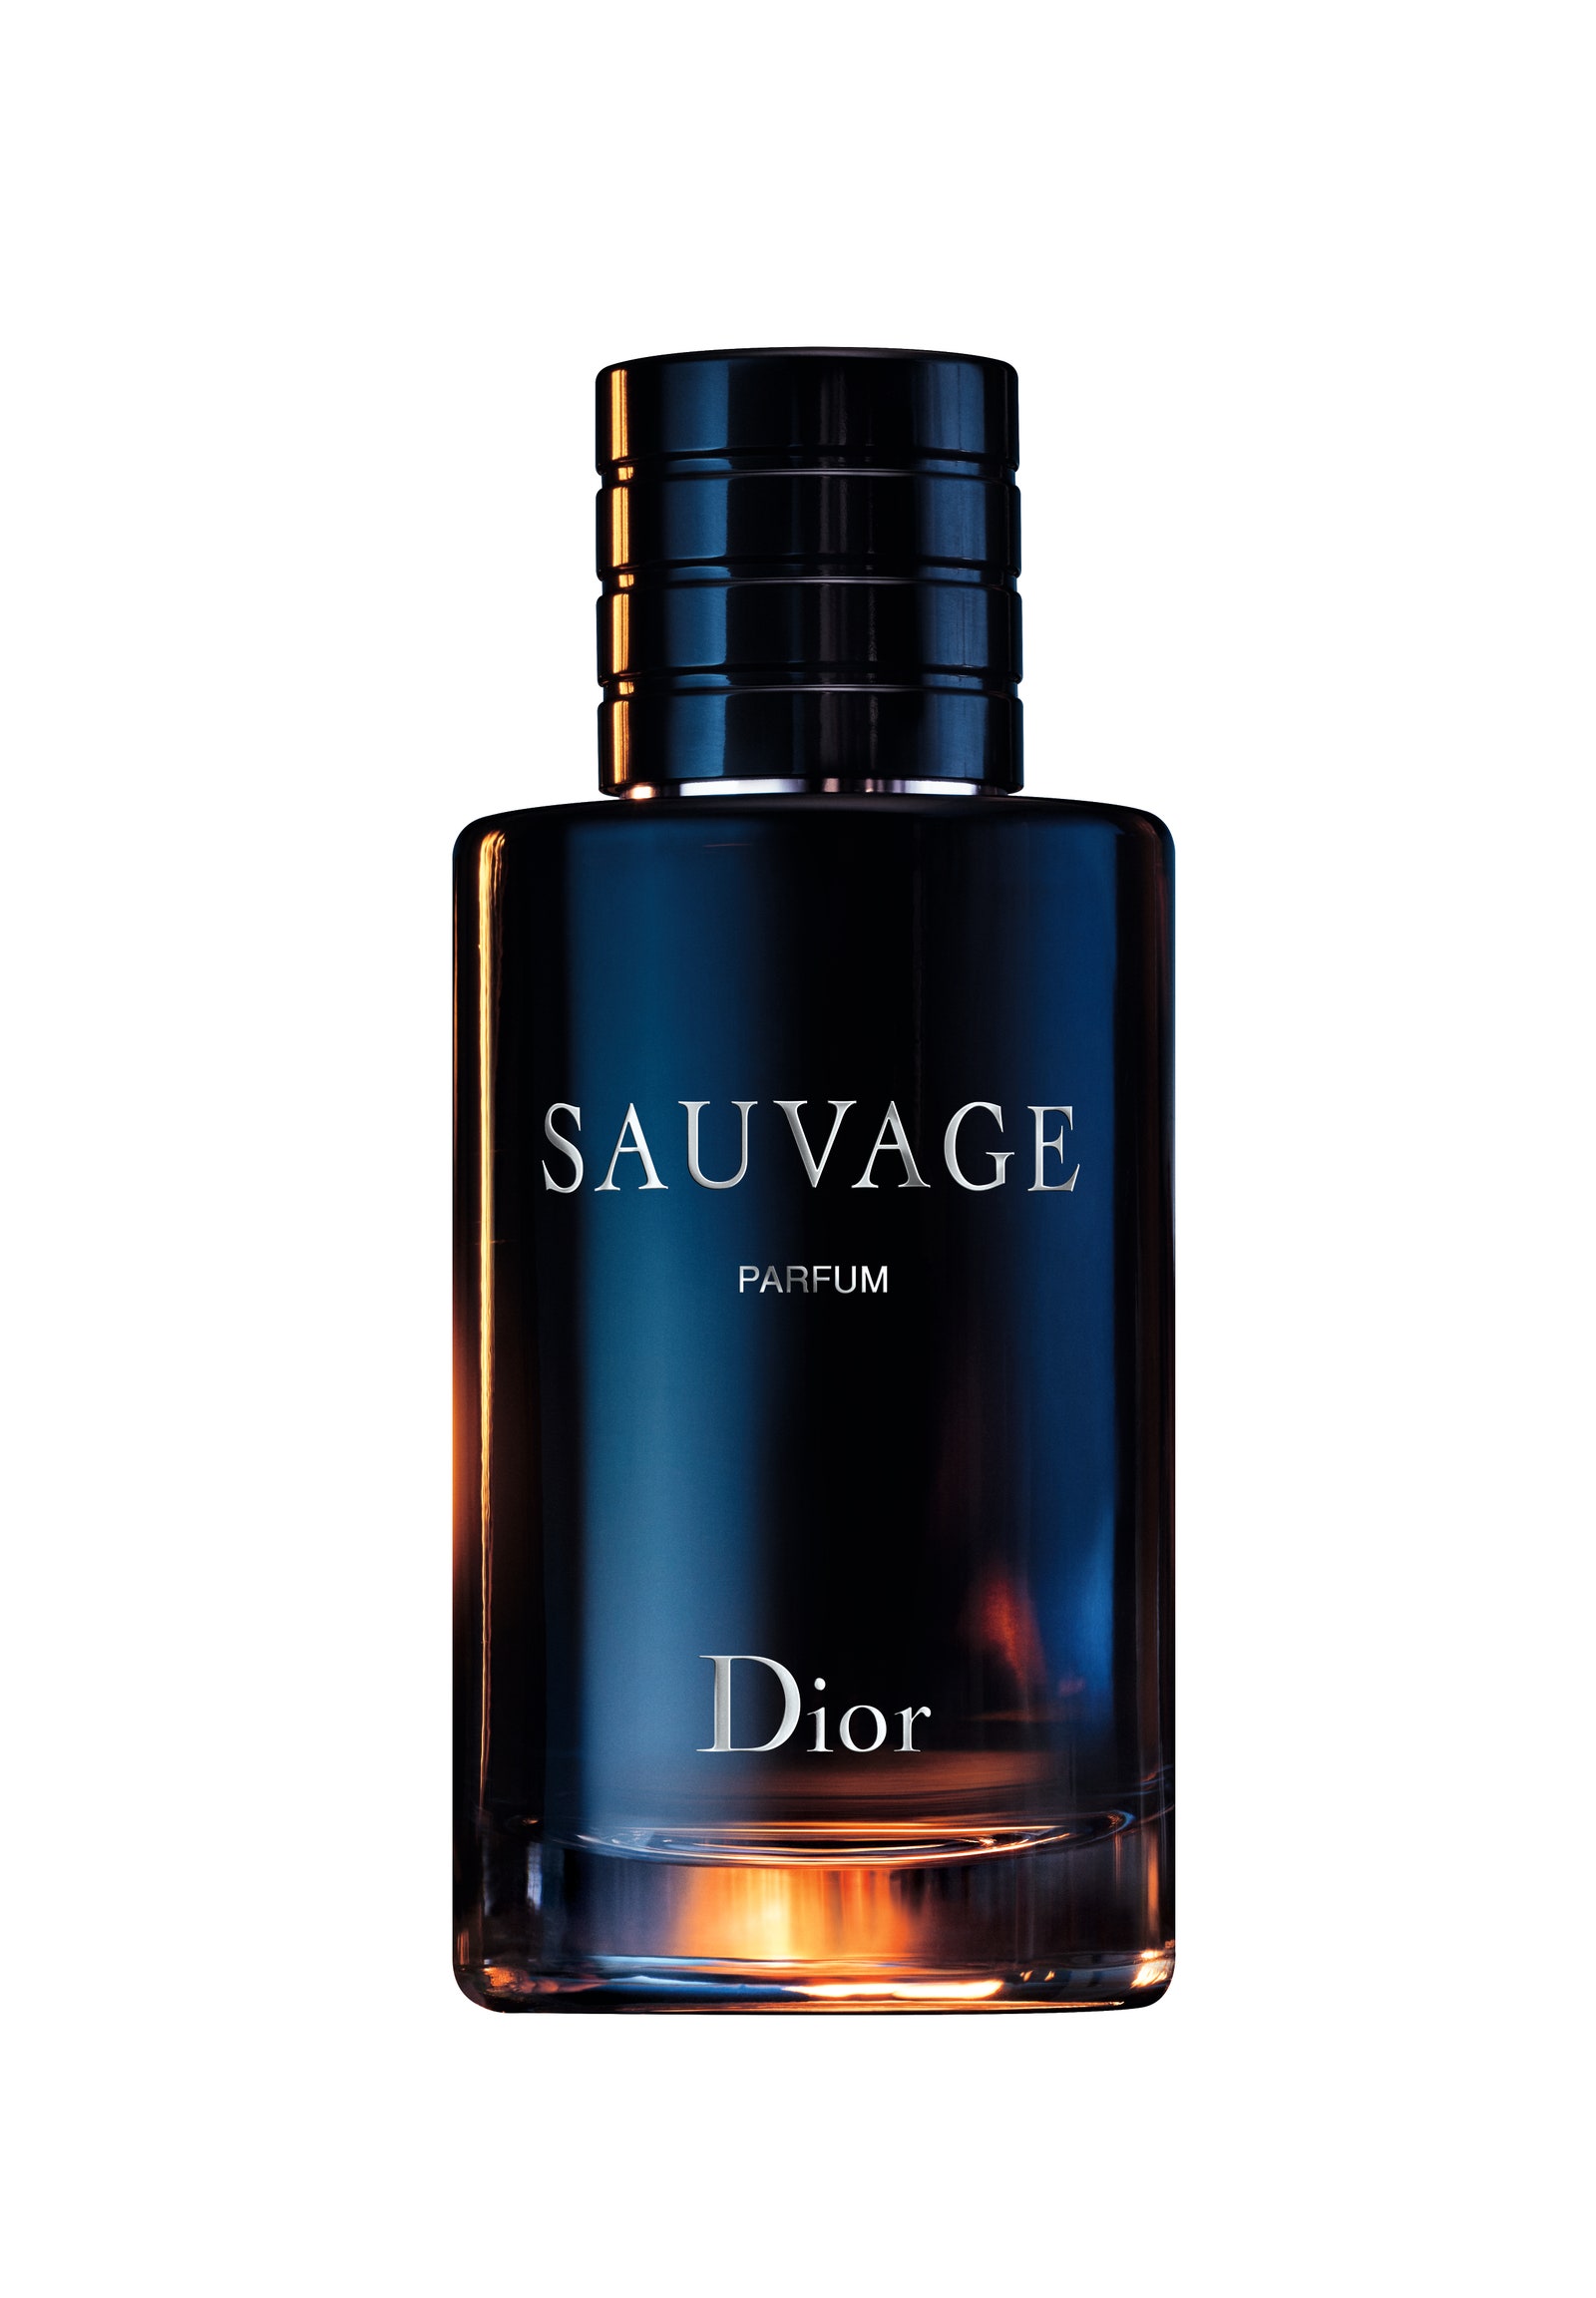 Вся красота дикой природы — в обновленной версии аромата Sauvage от Dior